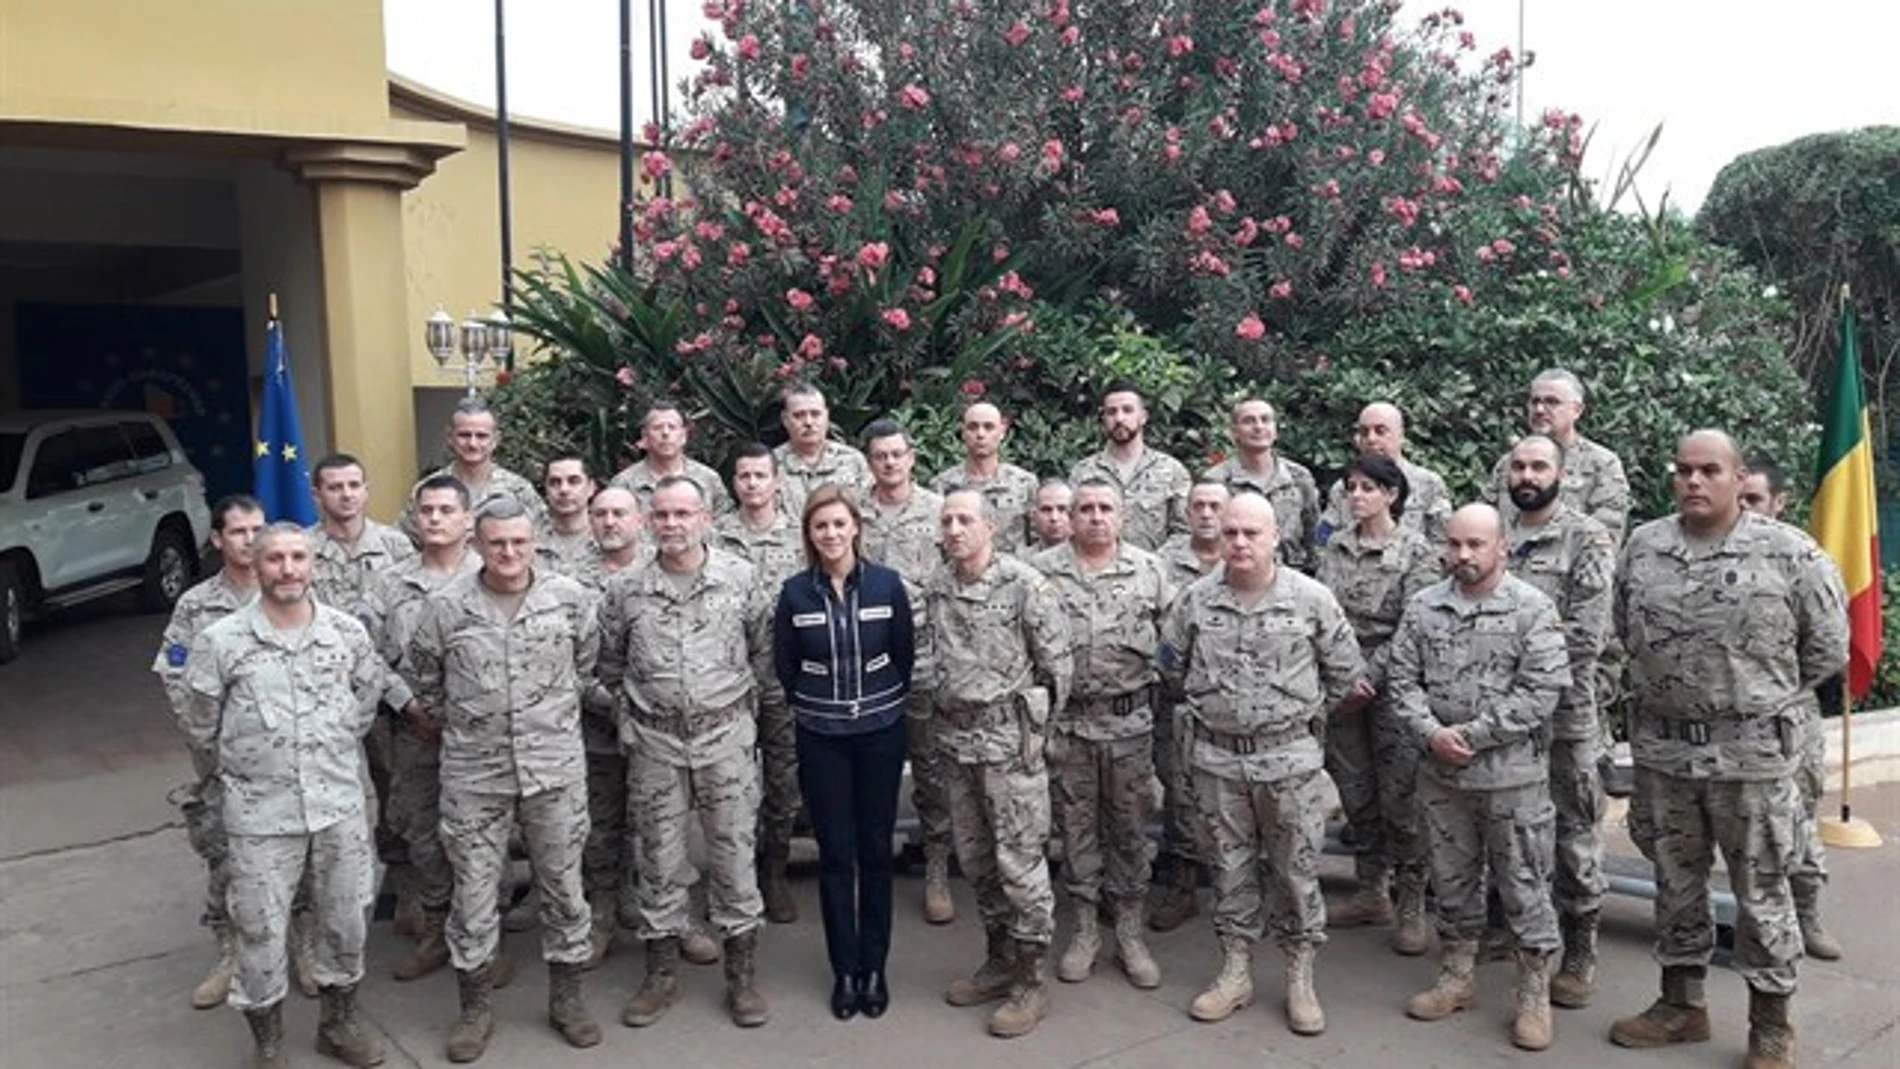 La ministra de Defensa, María Dolores de Cospedal, ha llegado hoy a Bamako (Mali) para visitar a los militares españoles que participan en la misión de entrenamiento de la UE (EUTM-Mali)